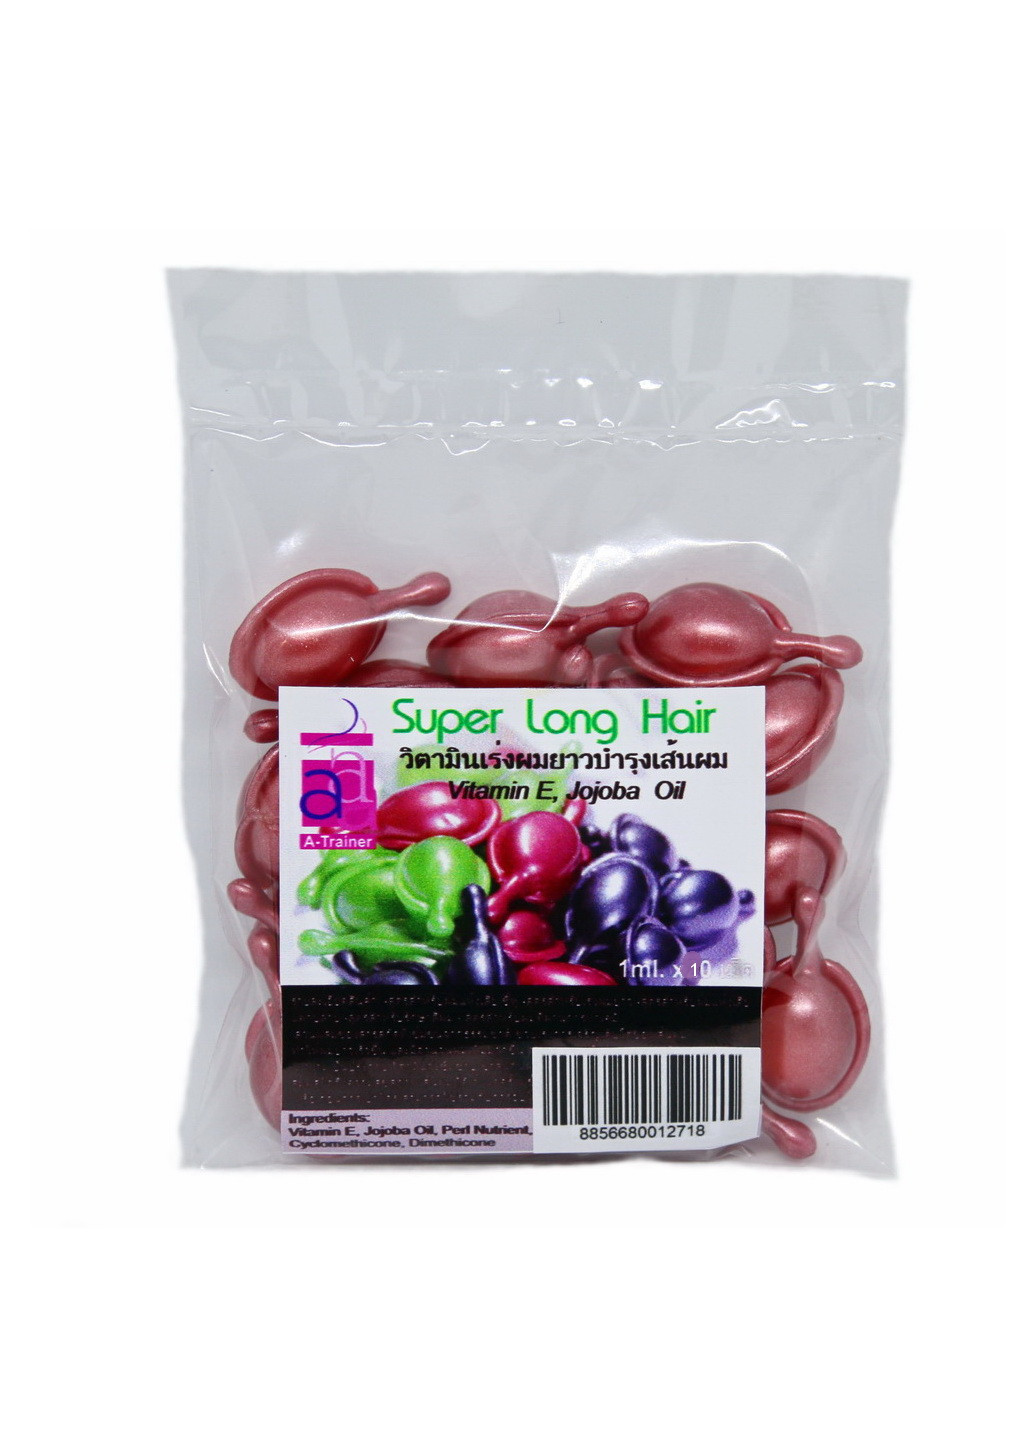 Тайские капсулы для волос Super Long Hair после окрашивания и химической завивки, 10 шт A-Trainer (251413683)